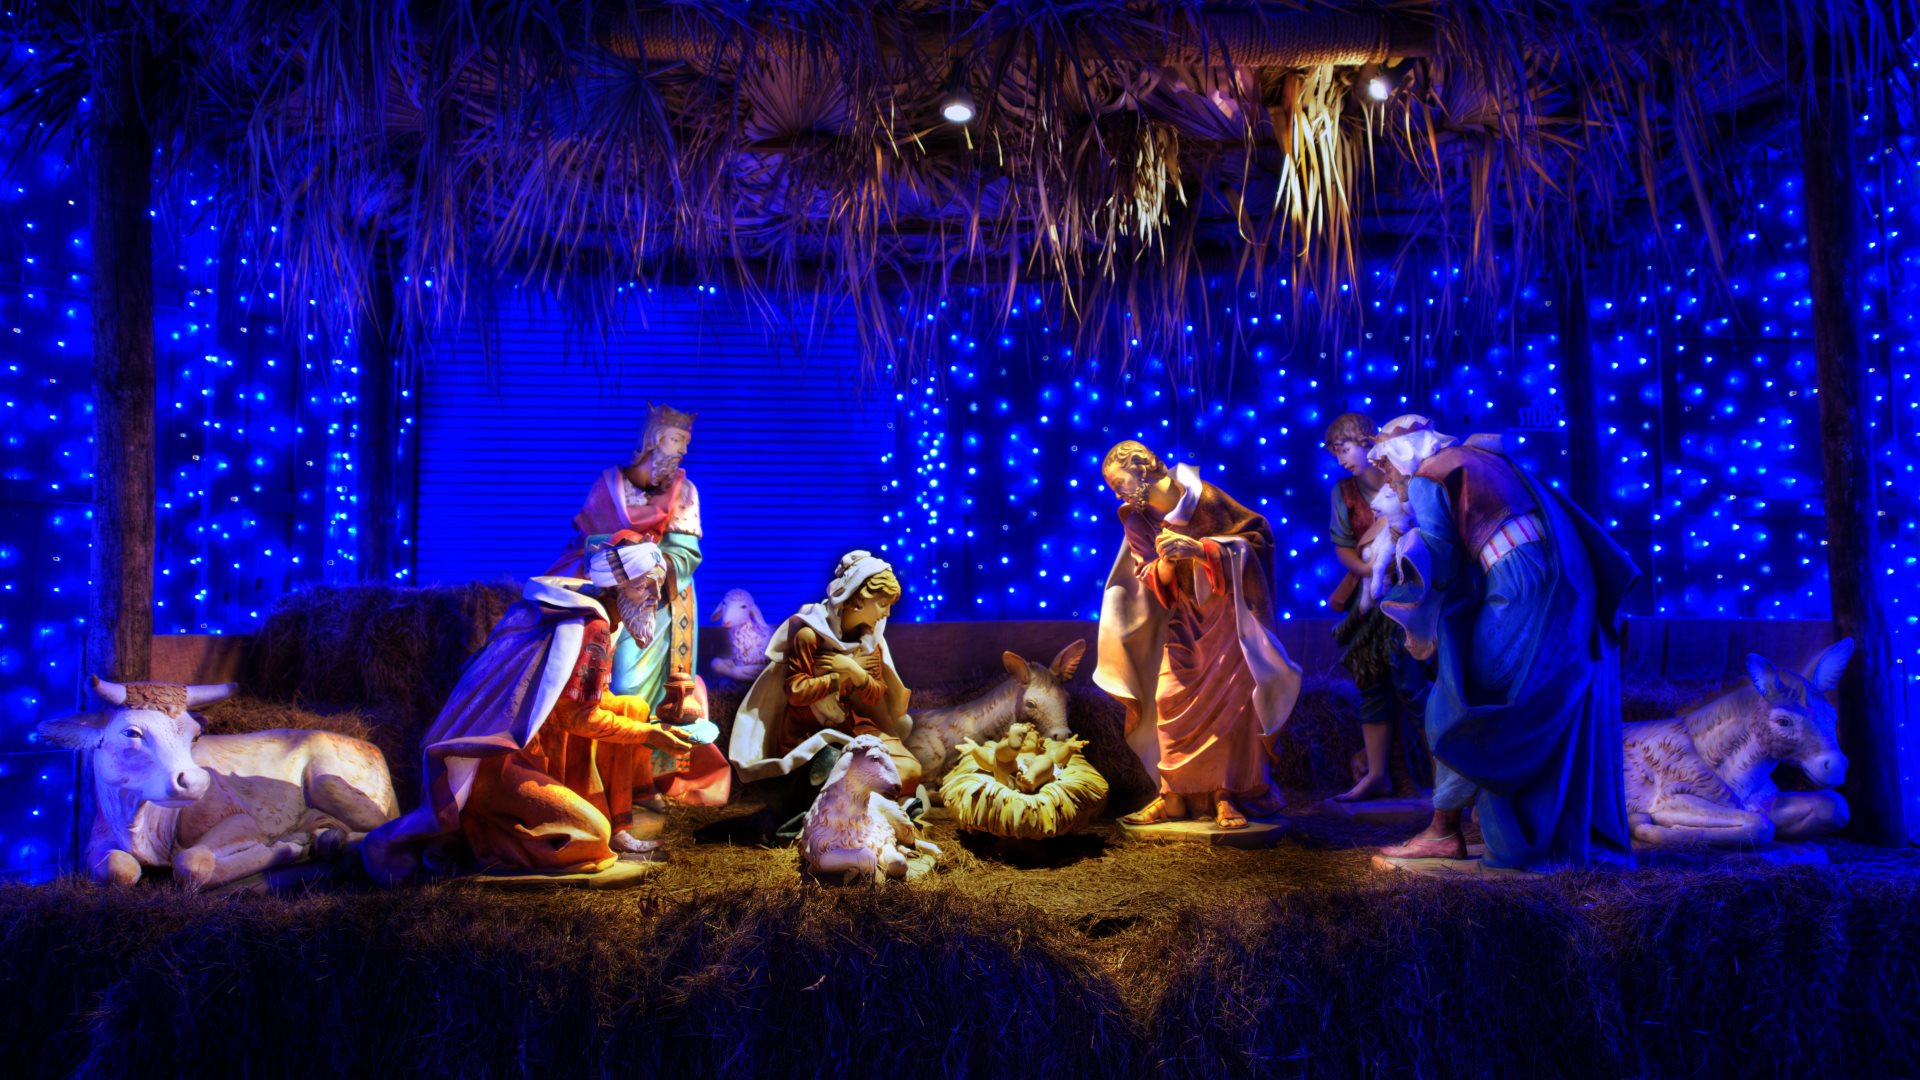 Ziua de 25 decembrie ca dată a Nașterii Domnului nu se datorează influențelor păgâne asupra bisericii